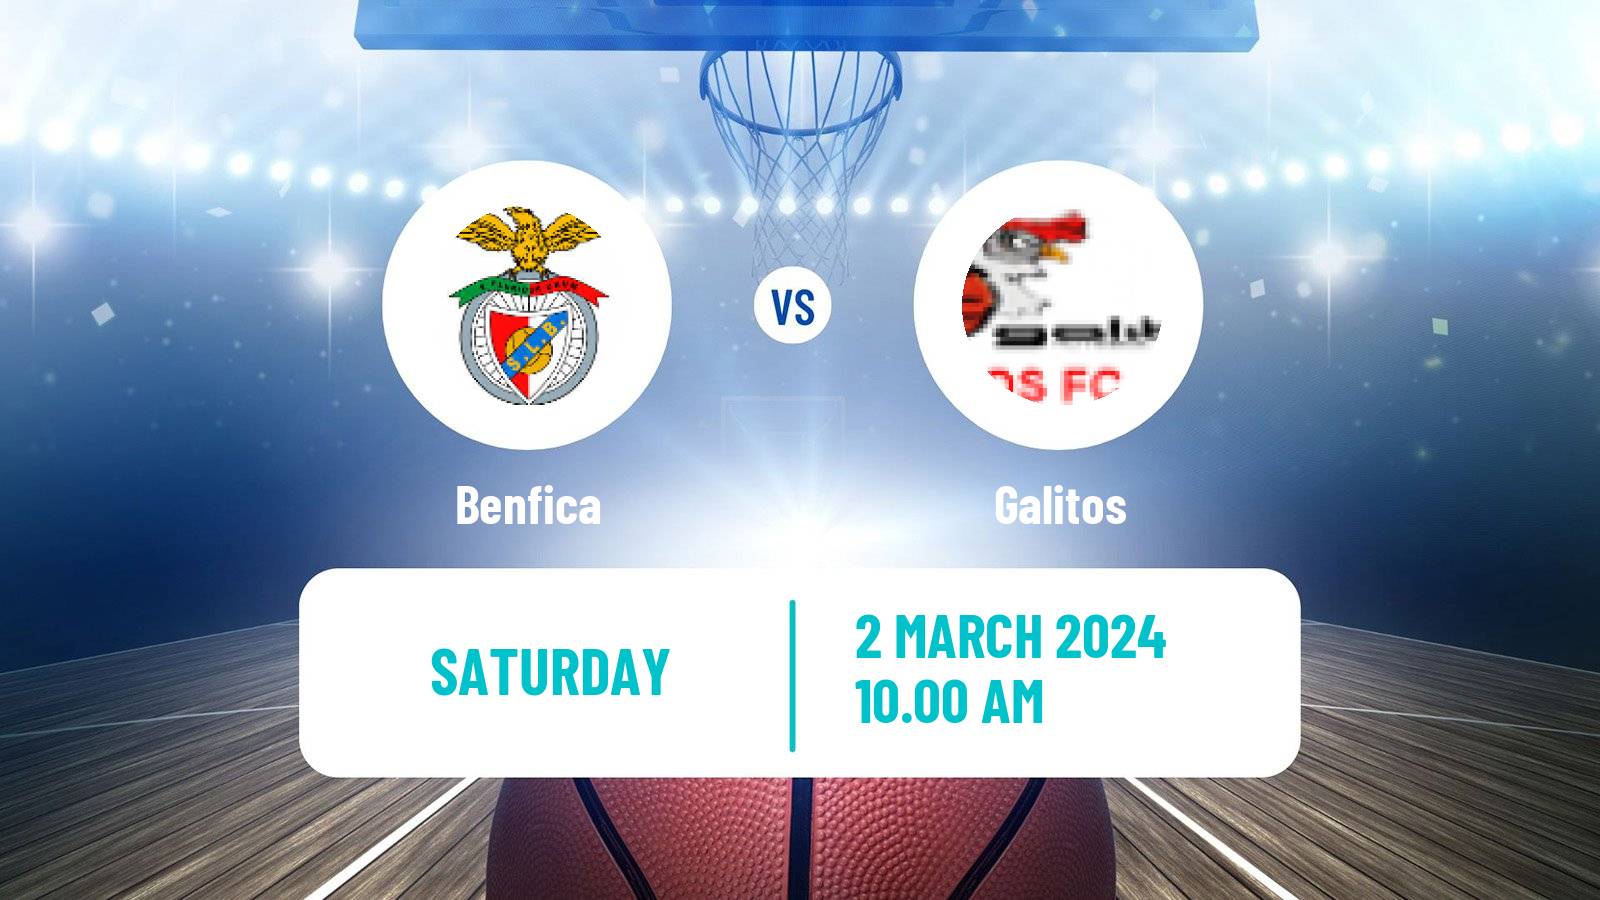 Basketball Portuguese LFB Benfica - Galitos